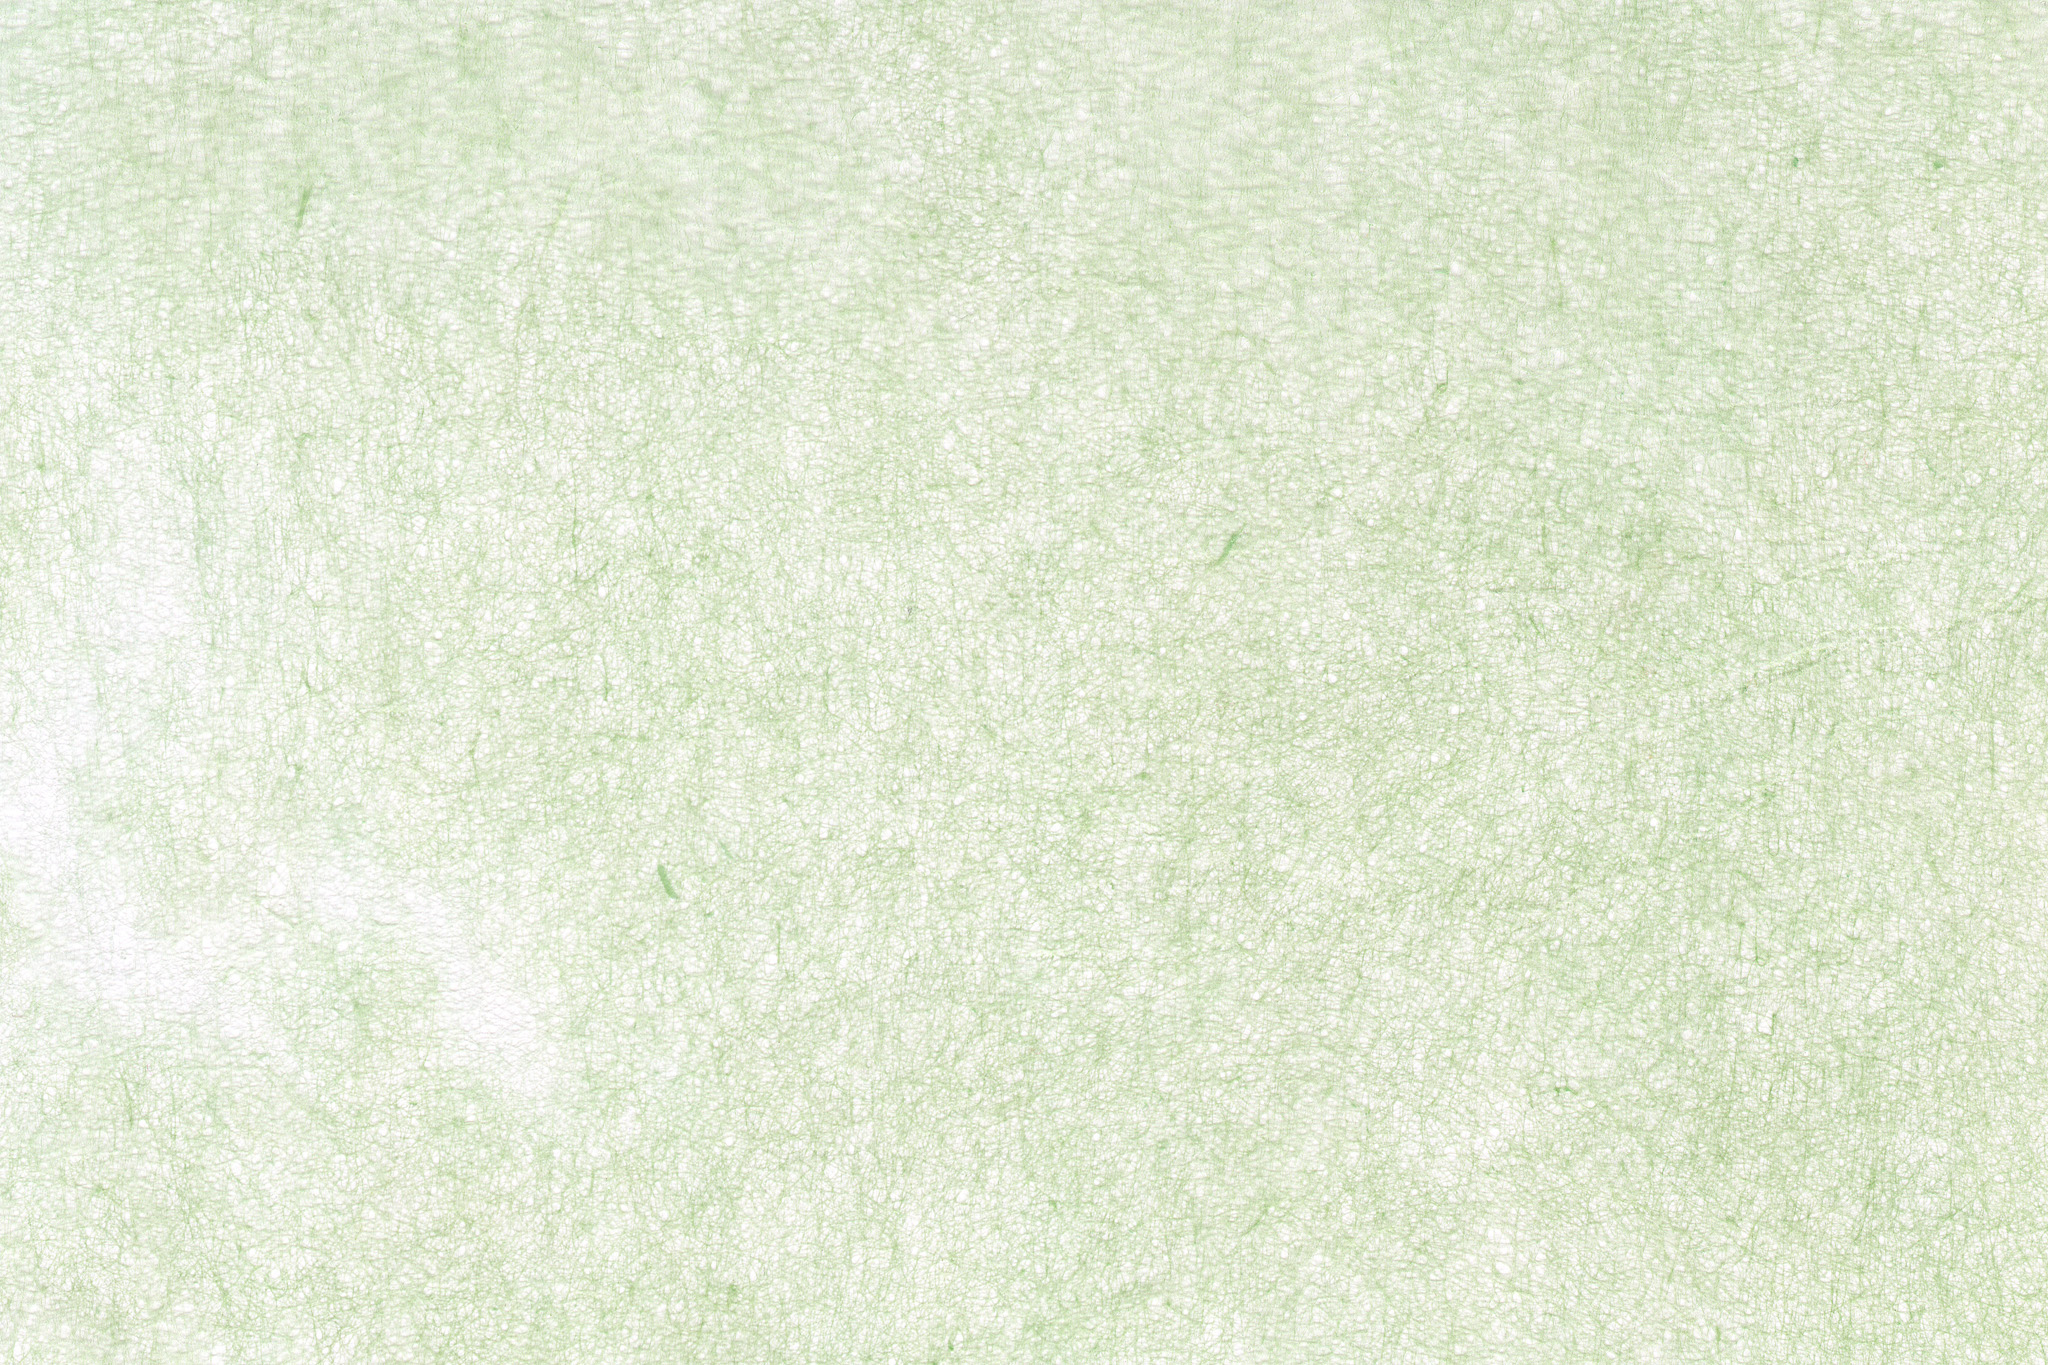 白に薄い緑色が掠れた和紙 のテクスチャ素材を無料ダウンロード 1 背景フリー素材 Beiz Images